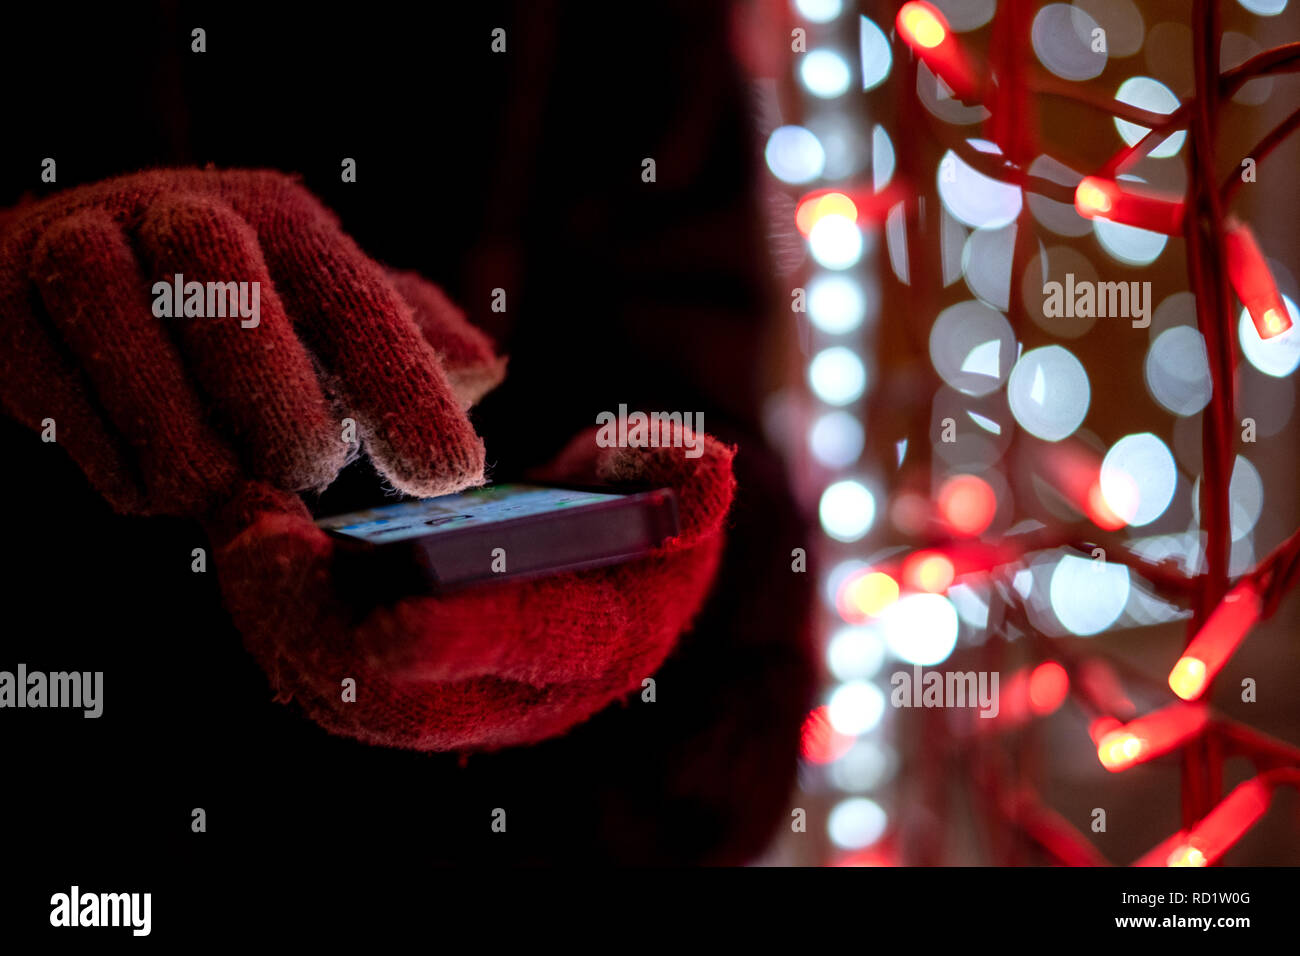 Frau mit Handschuhen können Sie über Ihr Mobiltelefon bei Nacht Stockfoto